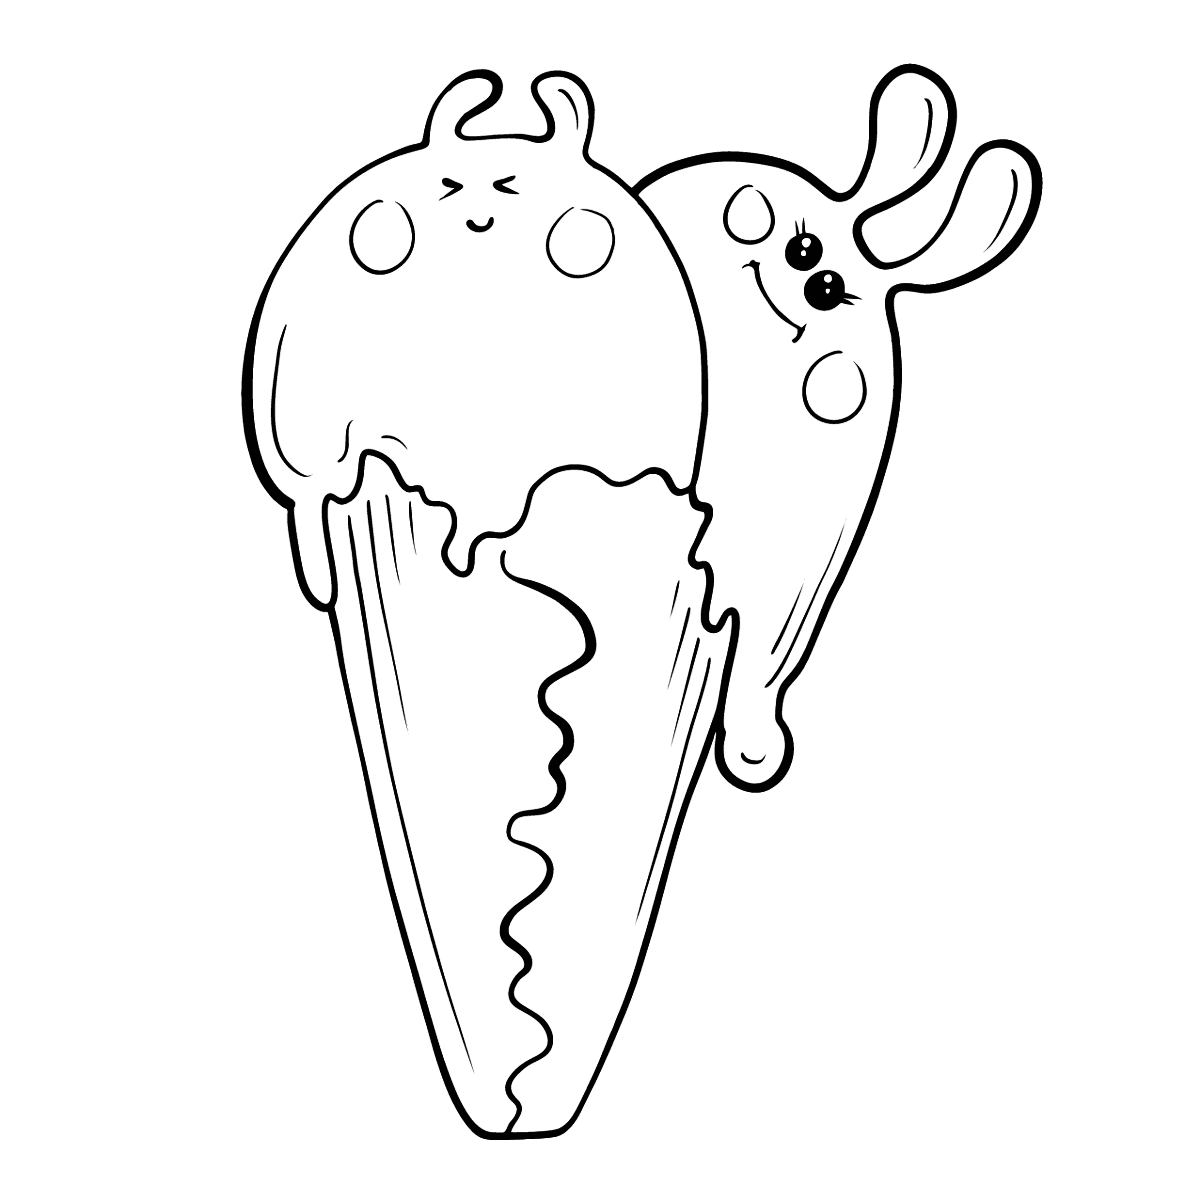 Раскраски мороженое созданы иллюстратором для маленьких сластен